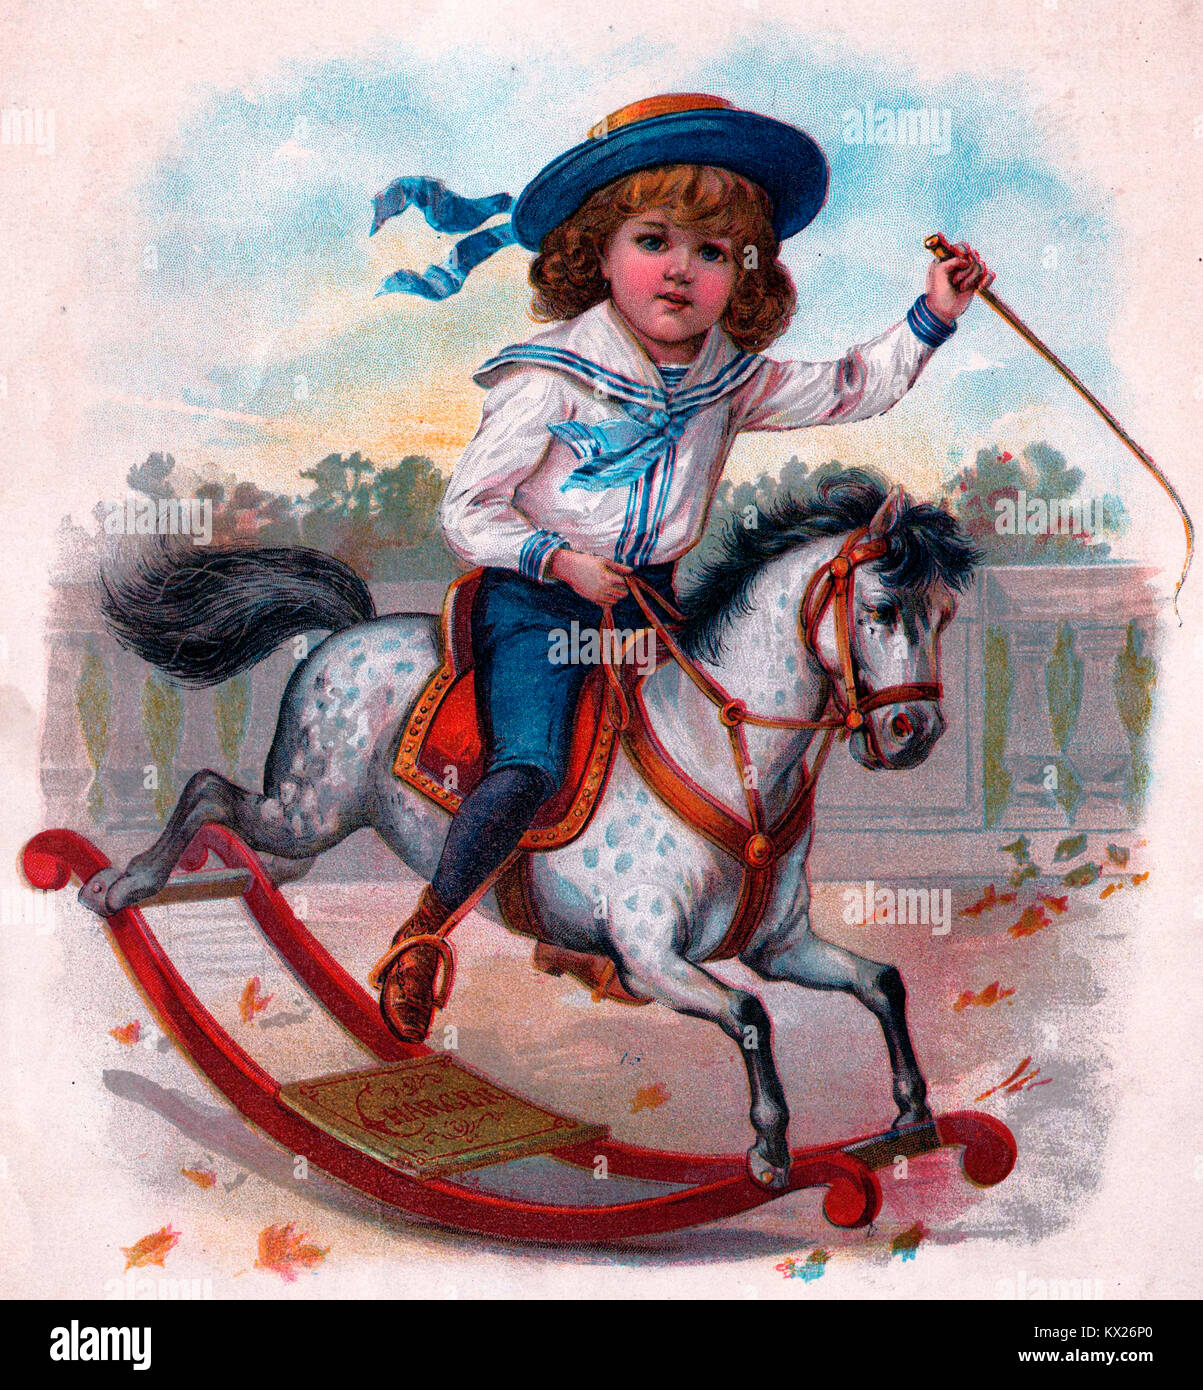 Johnnie To et son hobby horse - droit de l'ère victorienne de little boy riding a hobby horse Banque D'Images